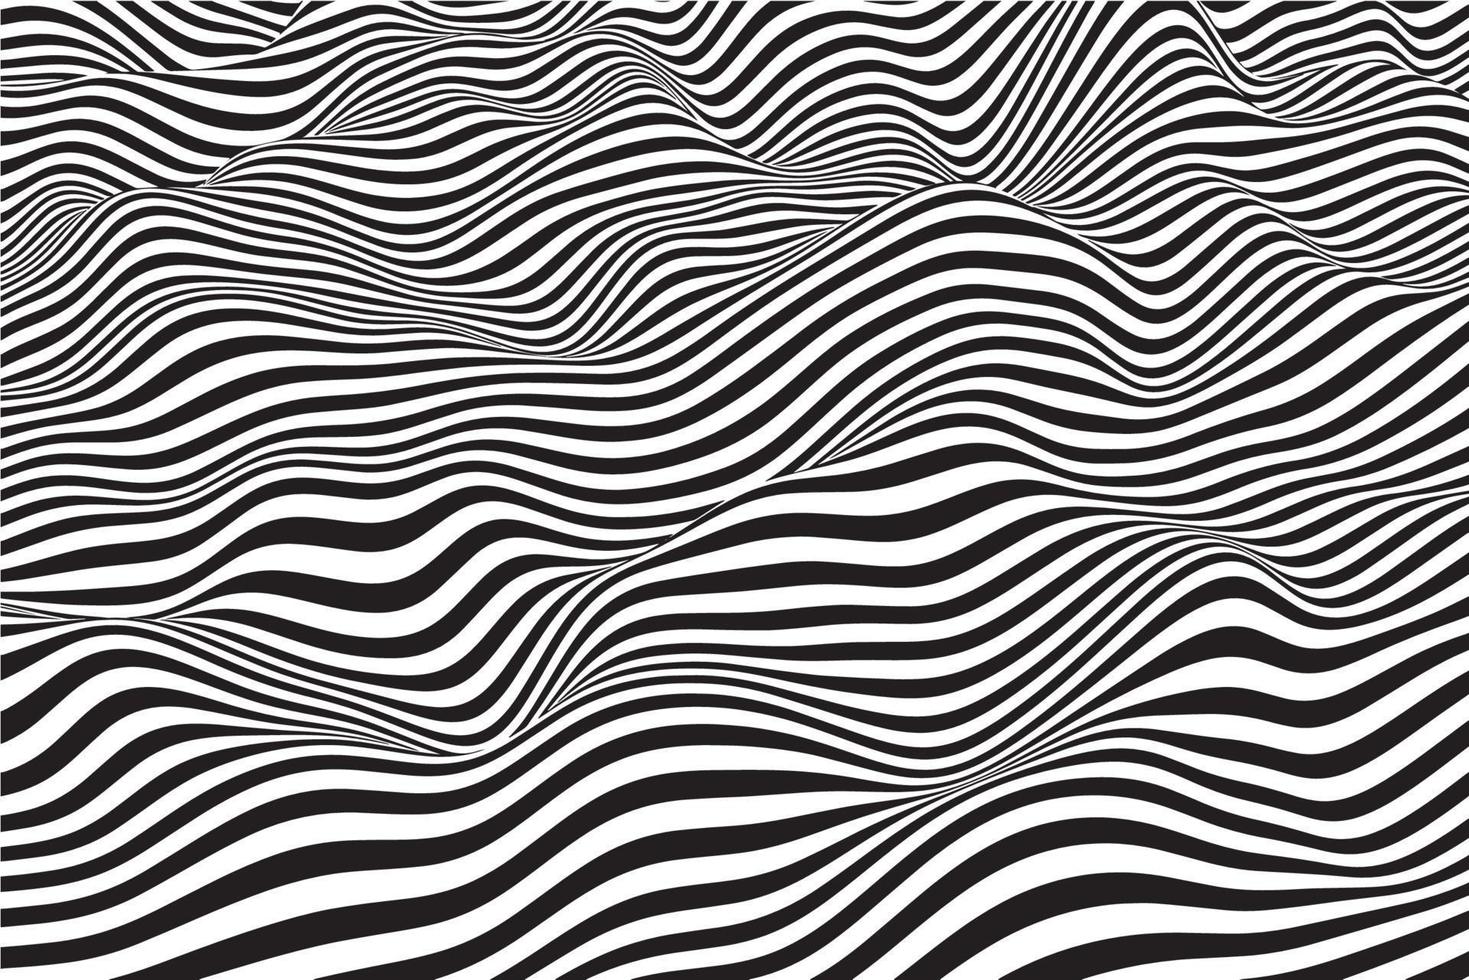 fundo de listras onduladas preto e branco elegante. textura de vetor onda ondulação abstrata na moda. design de padrão de linhas fluidas suaves